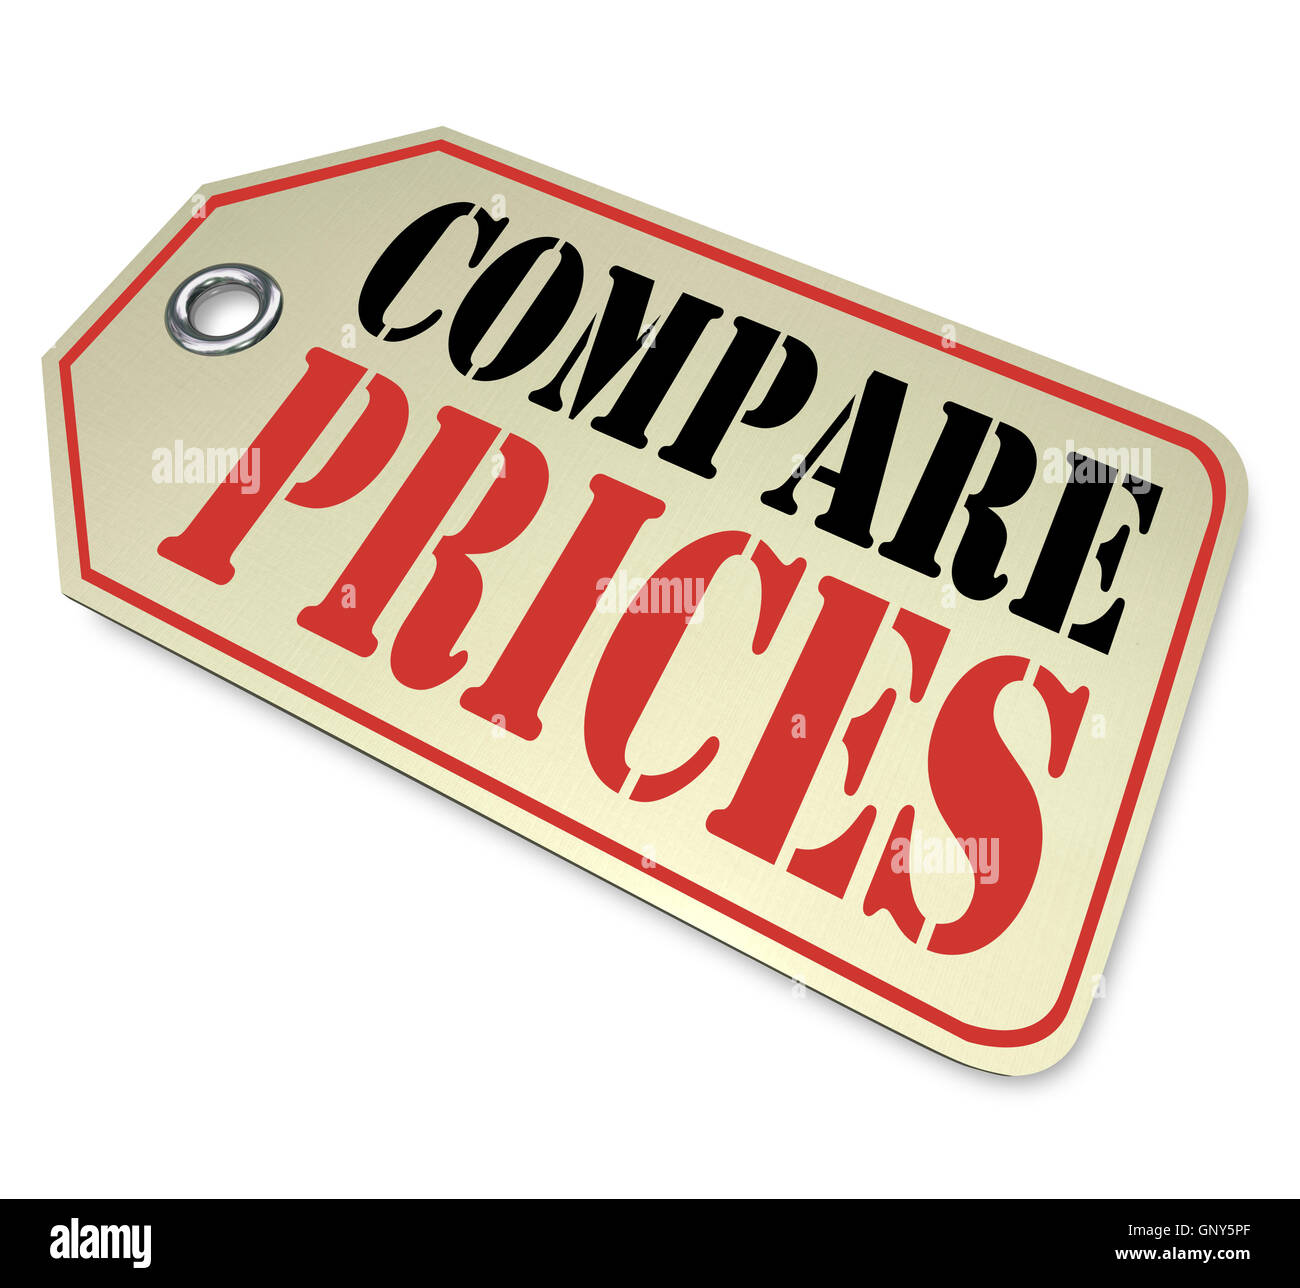 Compare Prices Tag Price Comparison Shopping Stock Photo